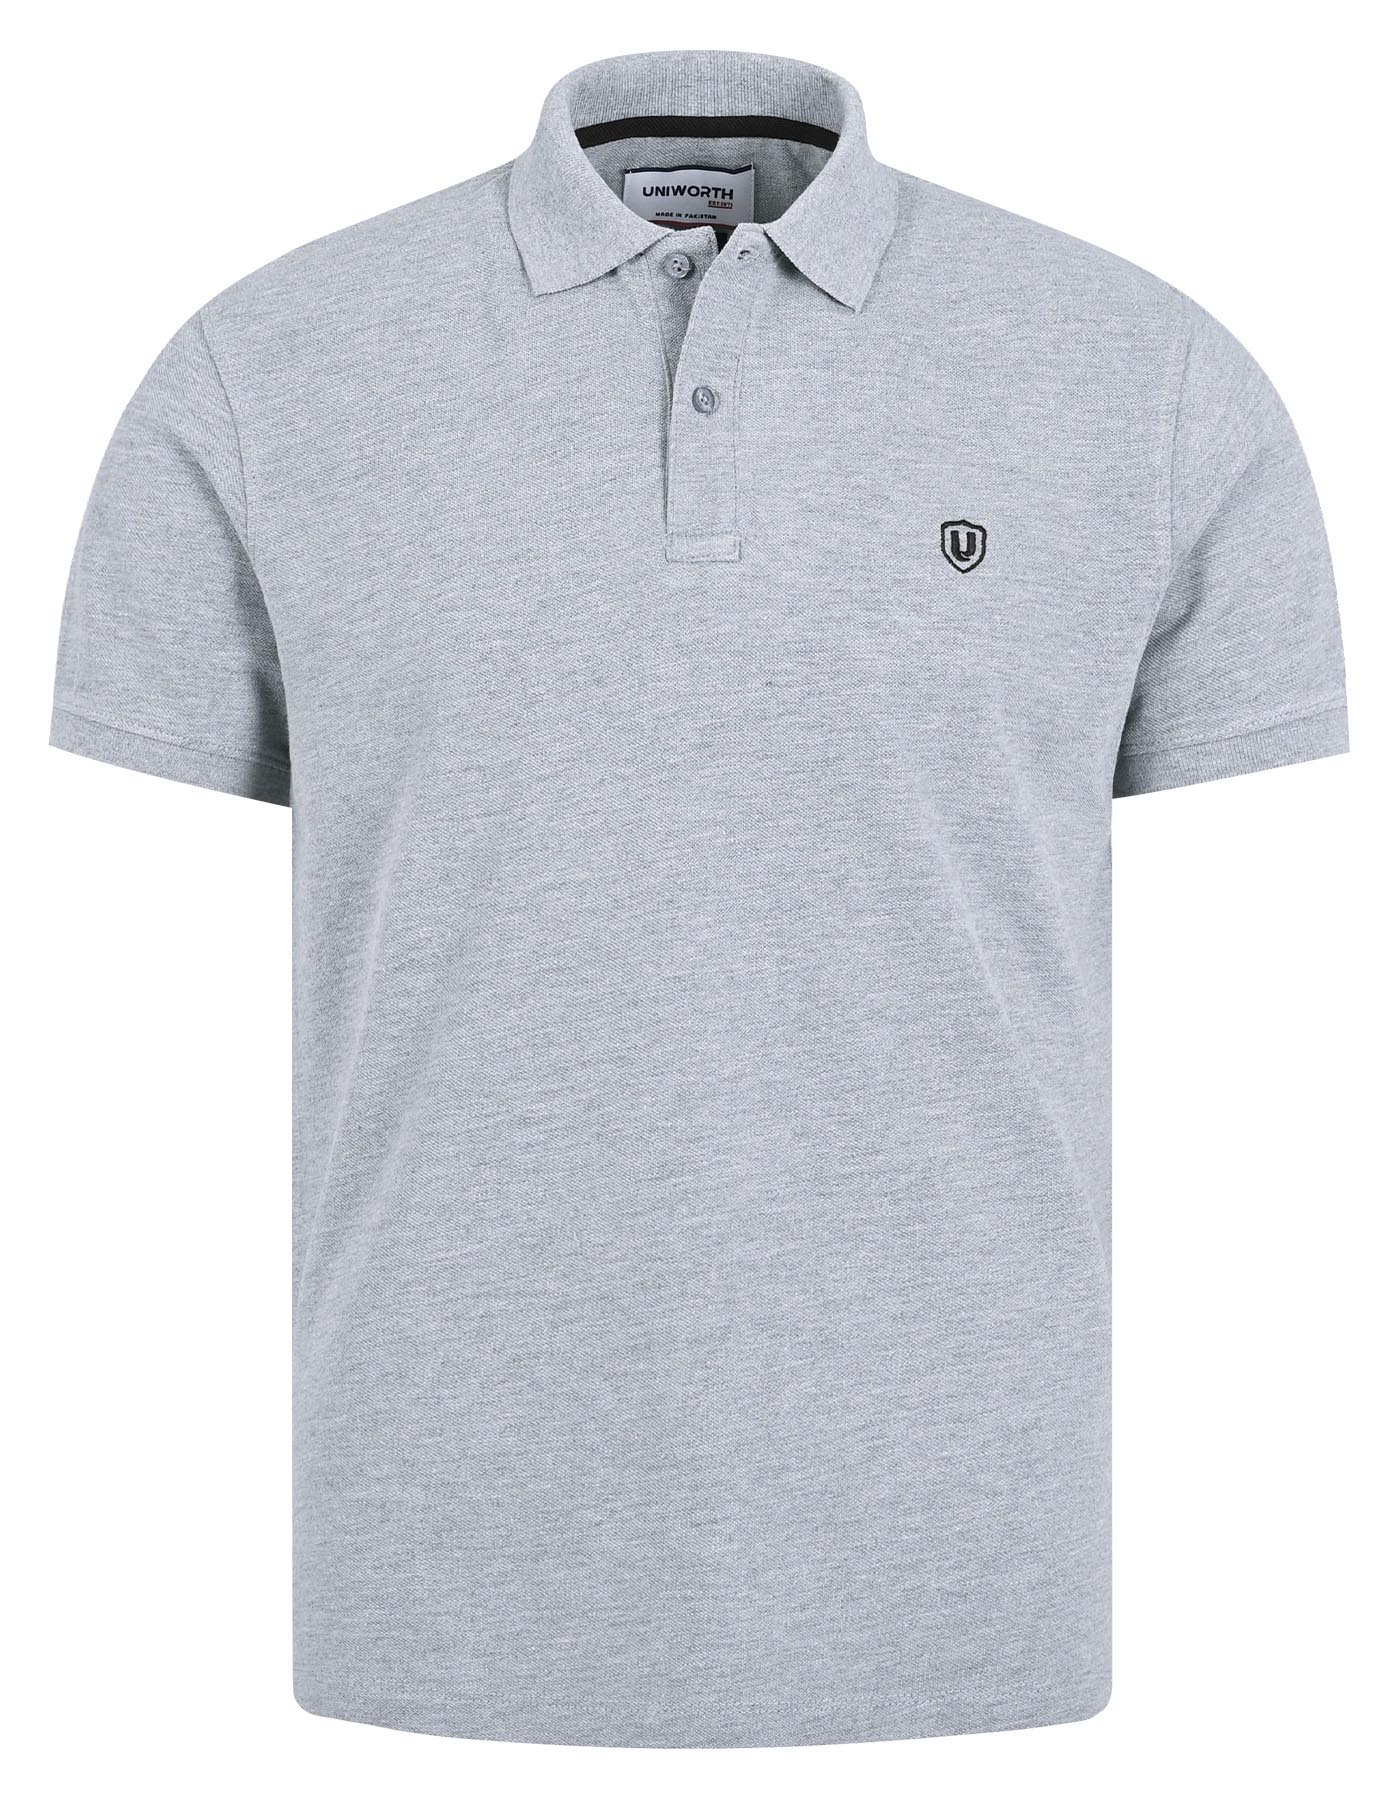 Grey Plain Cotton Polo Shirt For Men |Uniworth